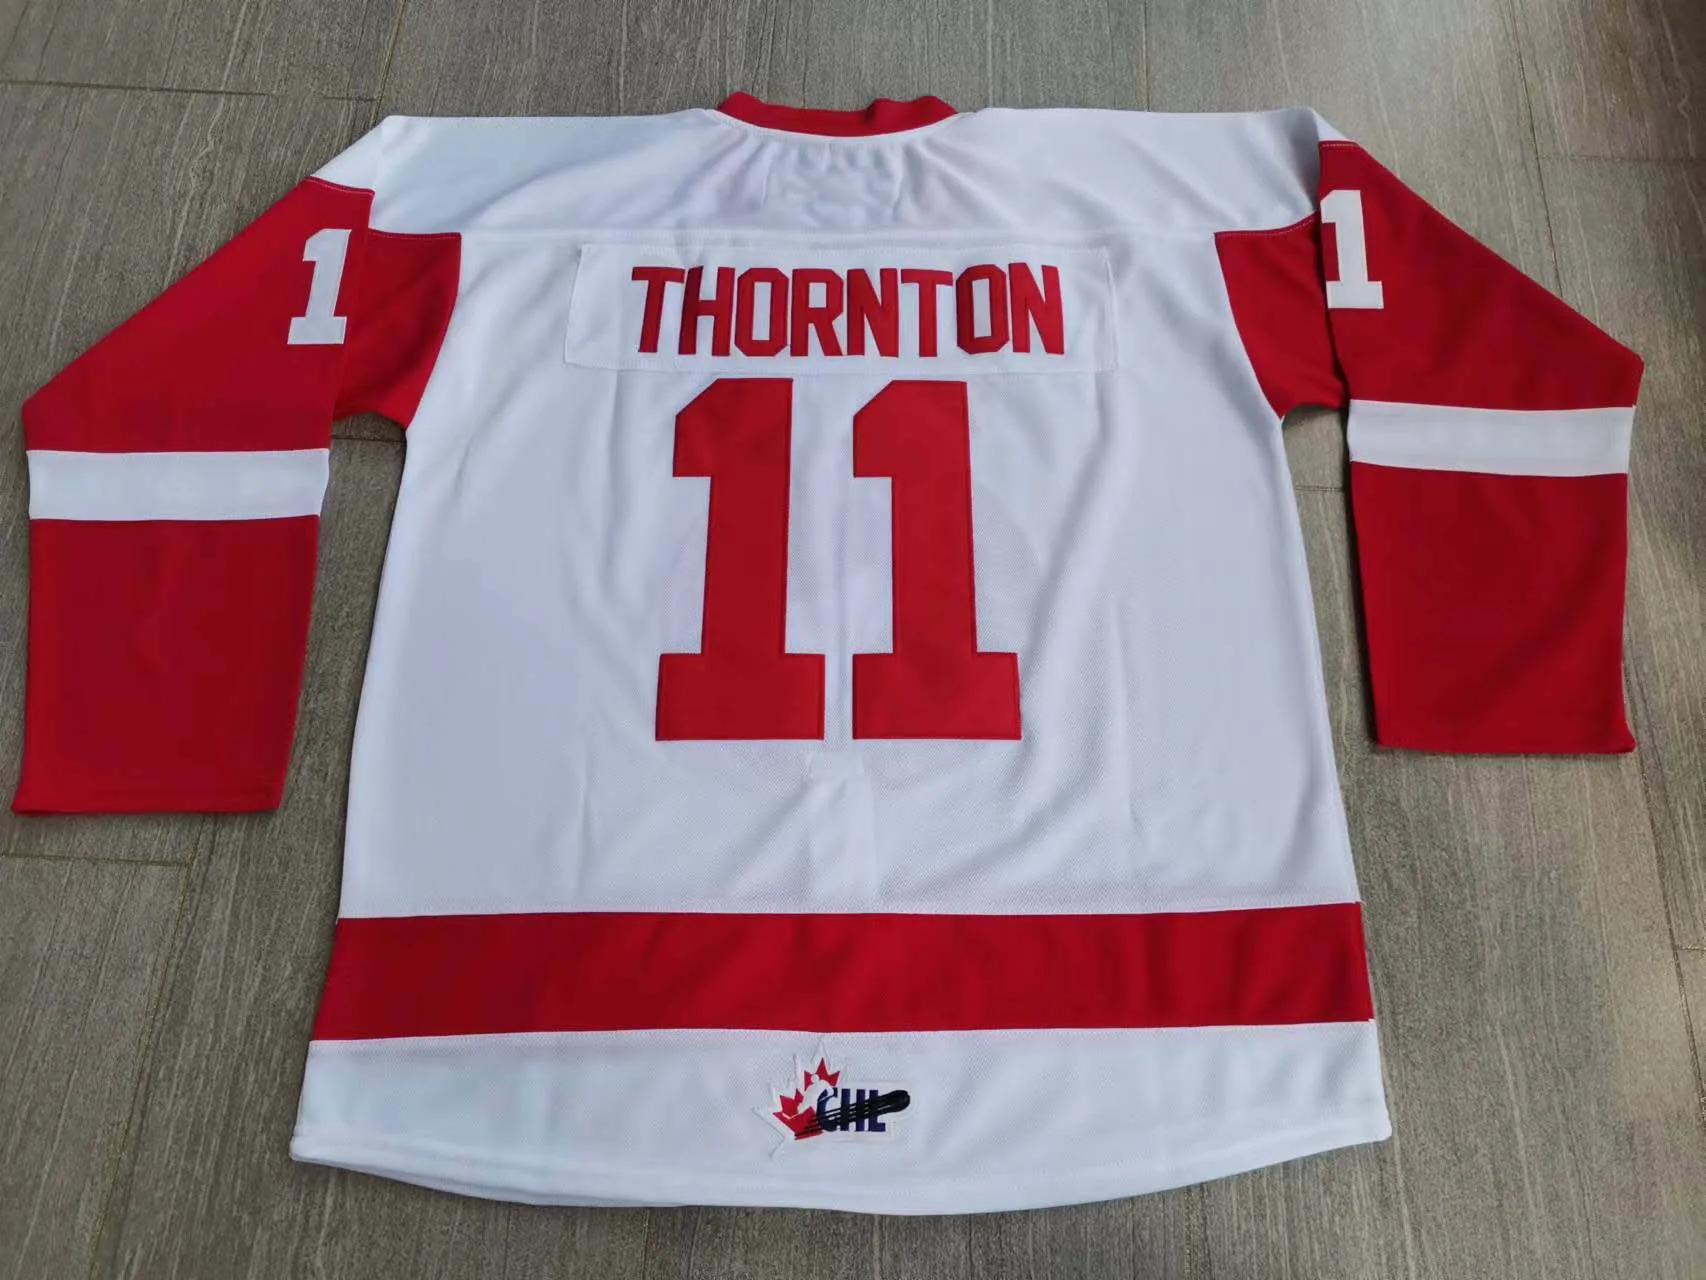 Hokej na studiach nosi fizyczne zdjęcia Ohl Soo Greyhounds Joe Thornton Men Men Młodzieżowe Kobiety Vintage High School Size S-5xl lub dowolne imię i nazwisko i koszulka numer